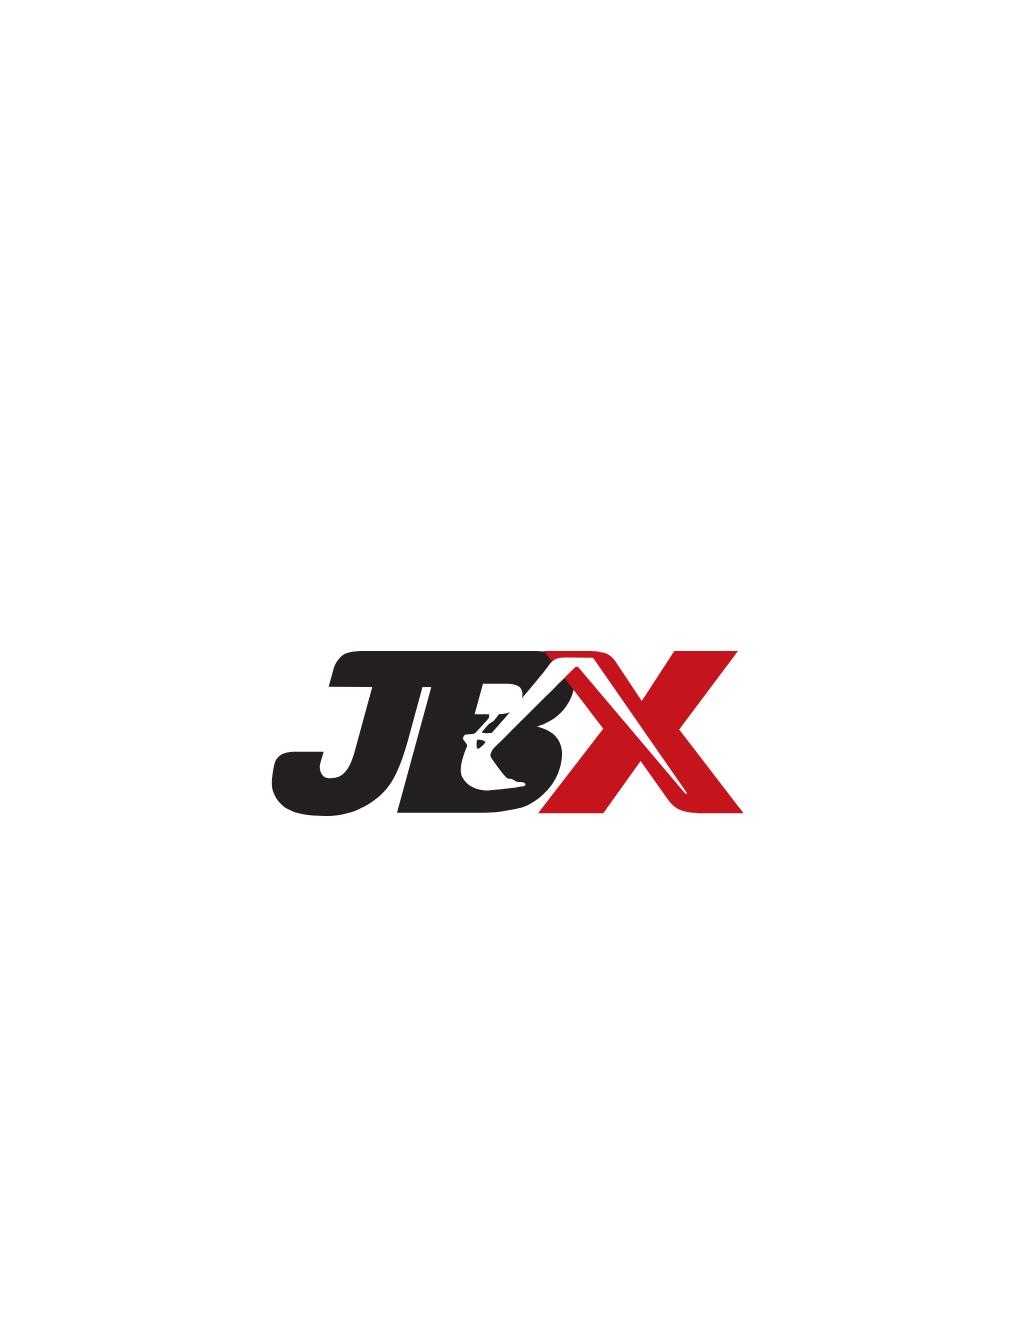 JBX LLC